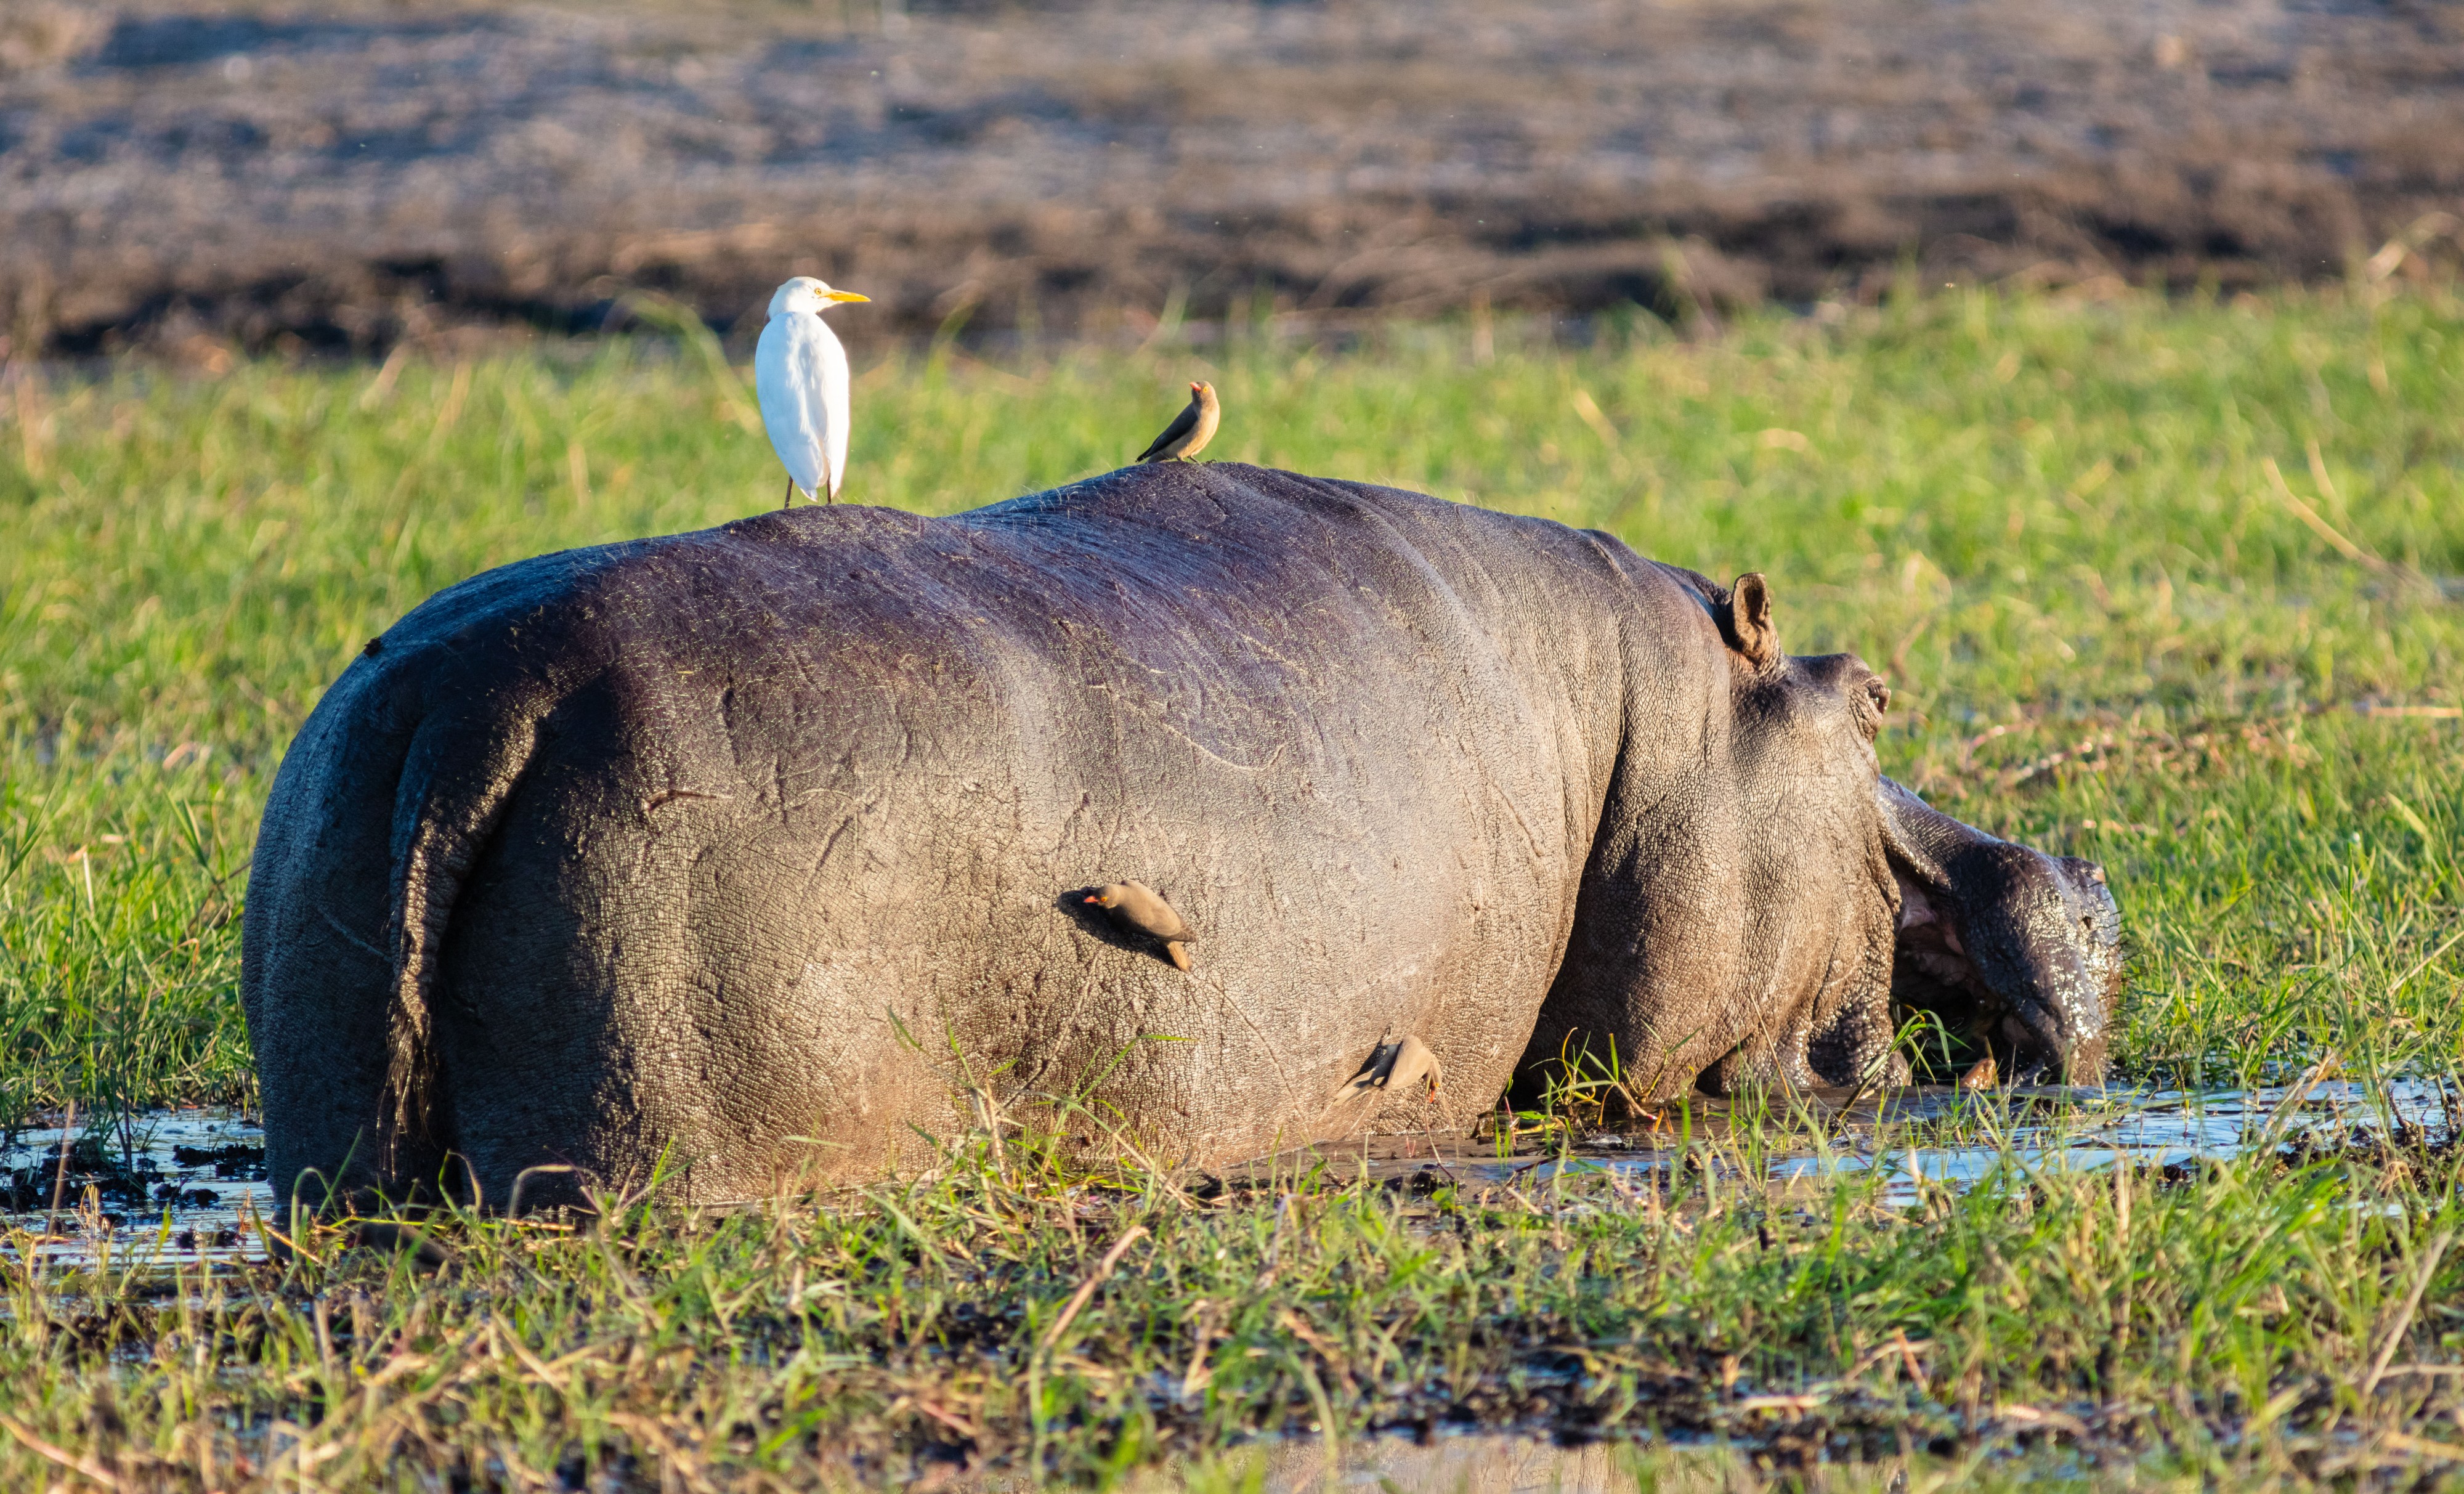 Hipopótamo (Hippopotamus amphibius), parque nacional de Chobe, Botsuana, 2018-07-28, DD 85